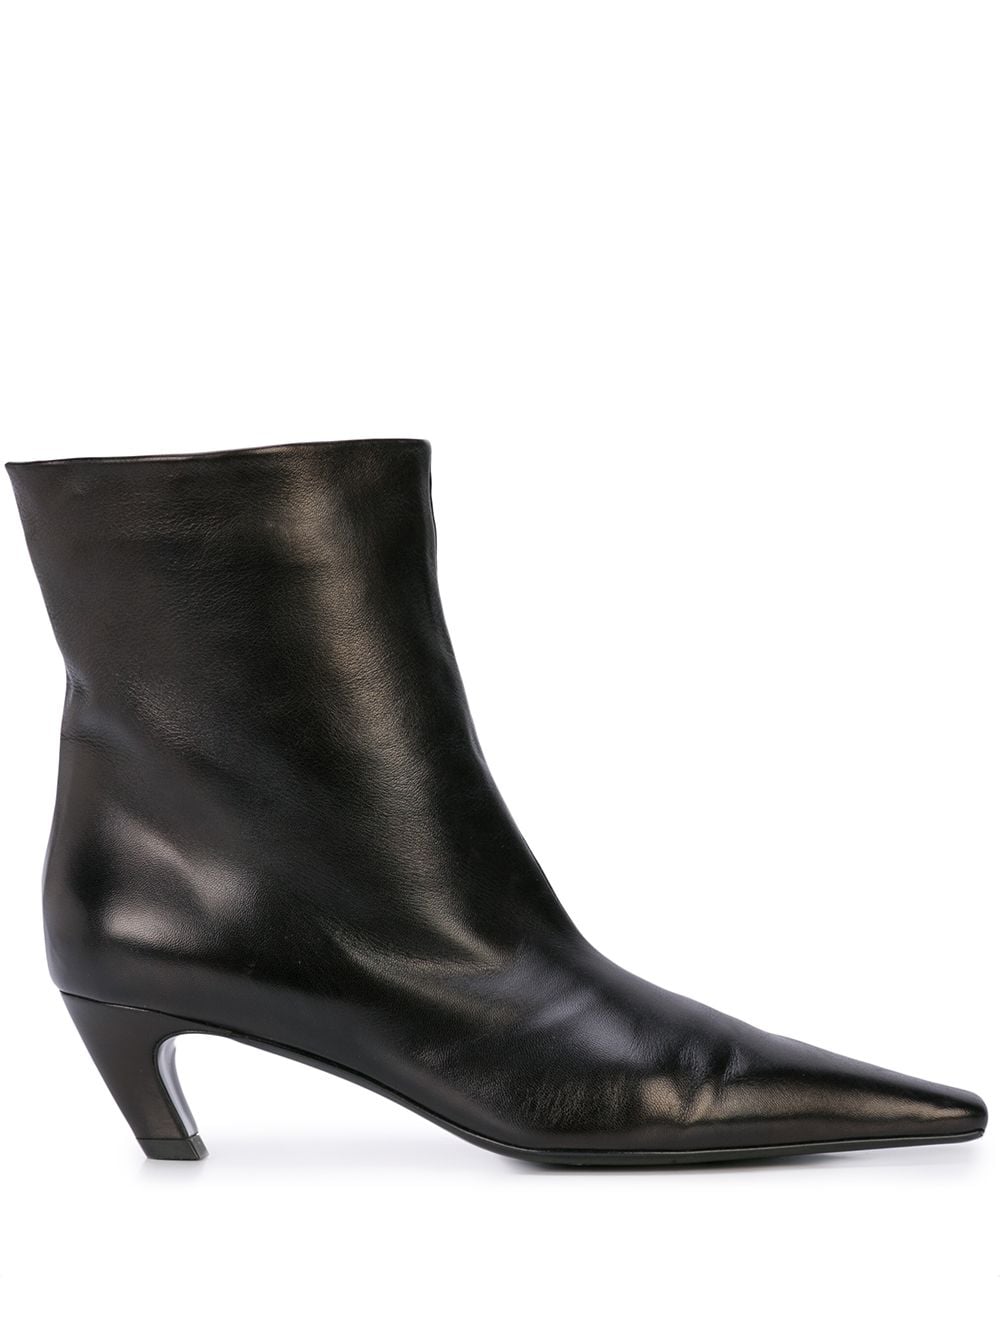 KHAITE The Arizona 50mm leather ankle boots - Black von KHAITE